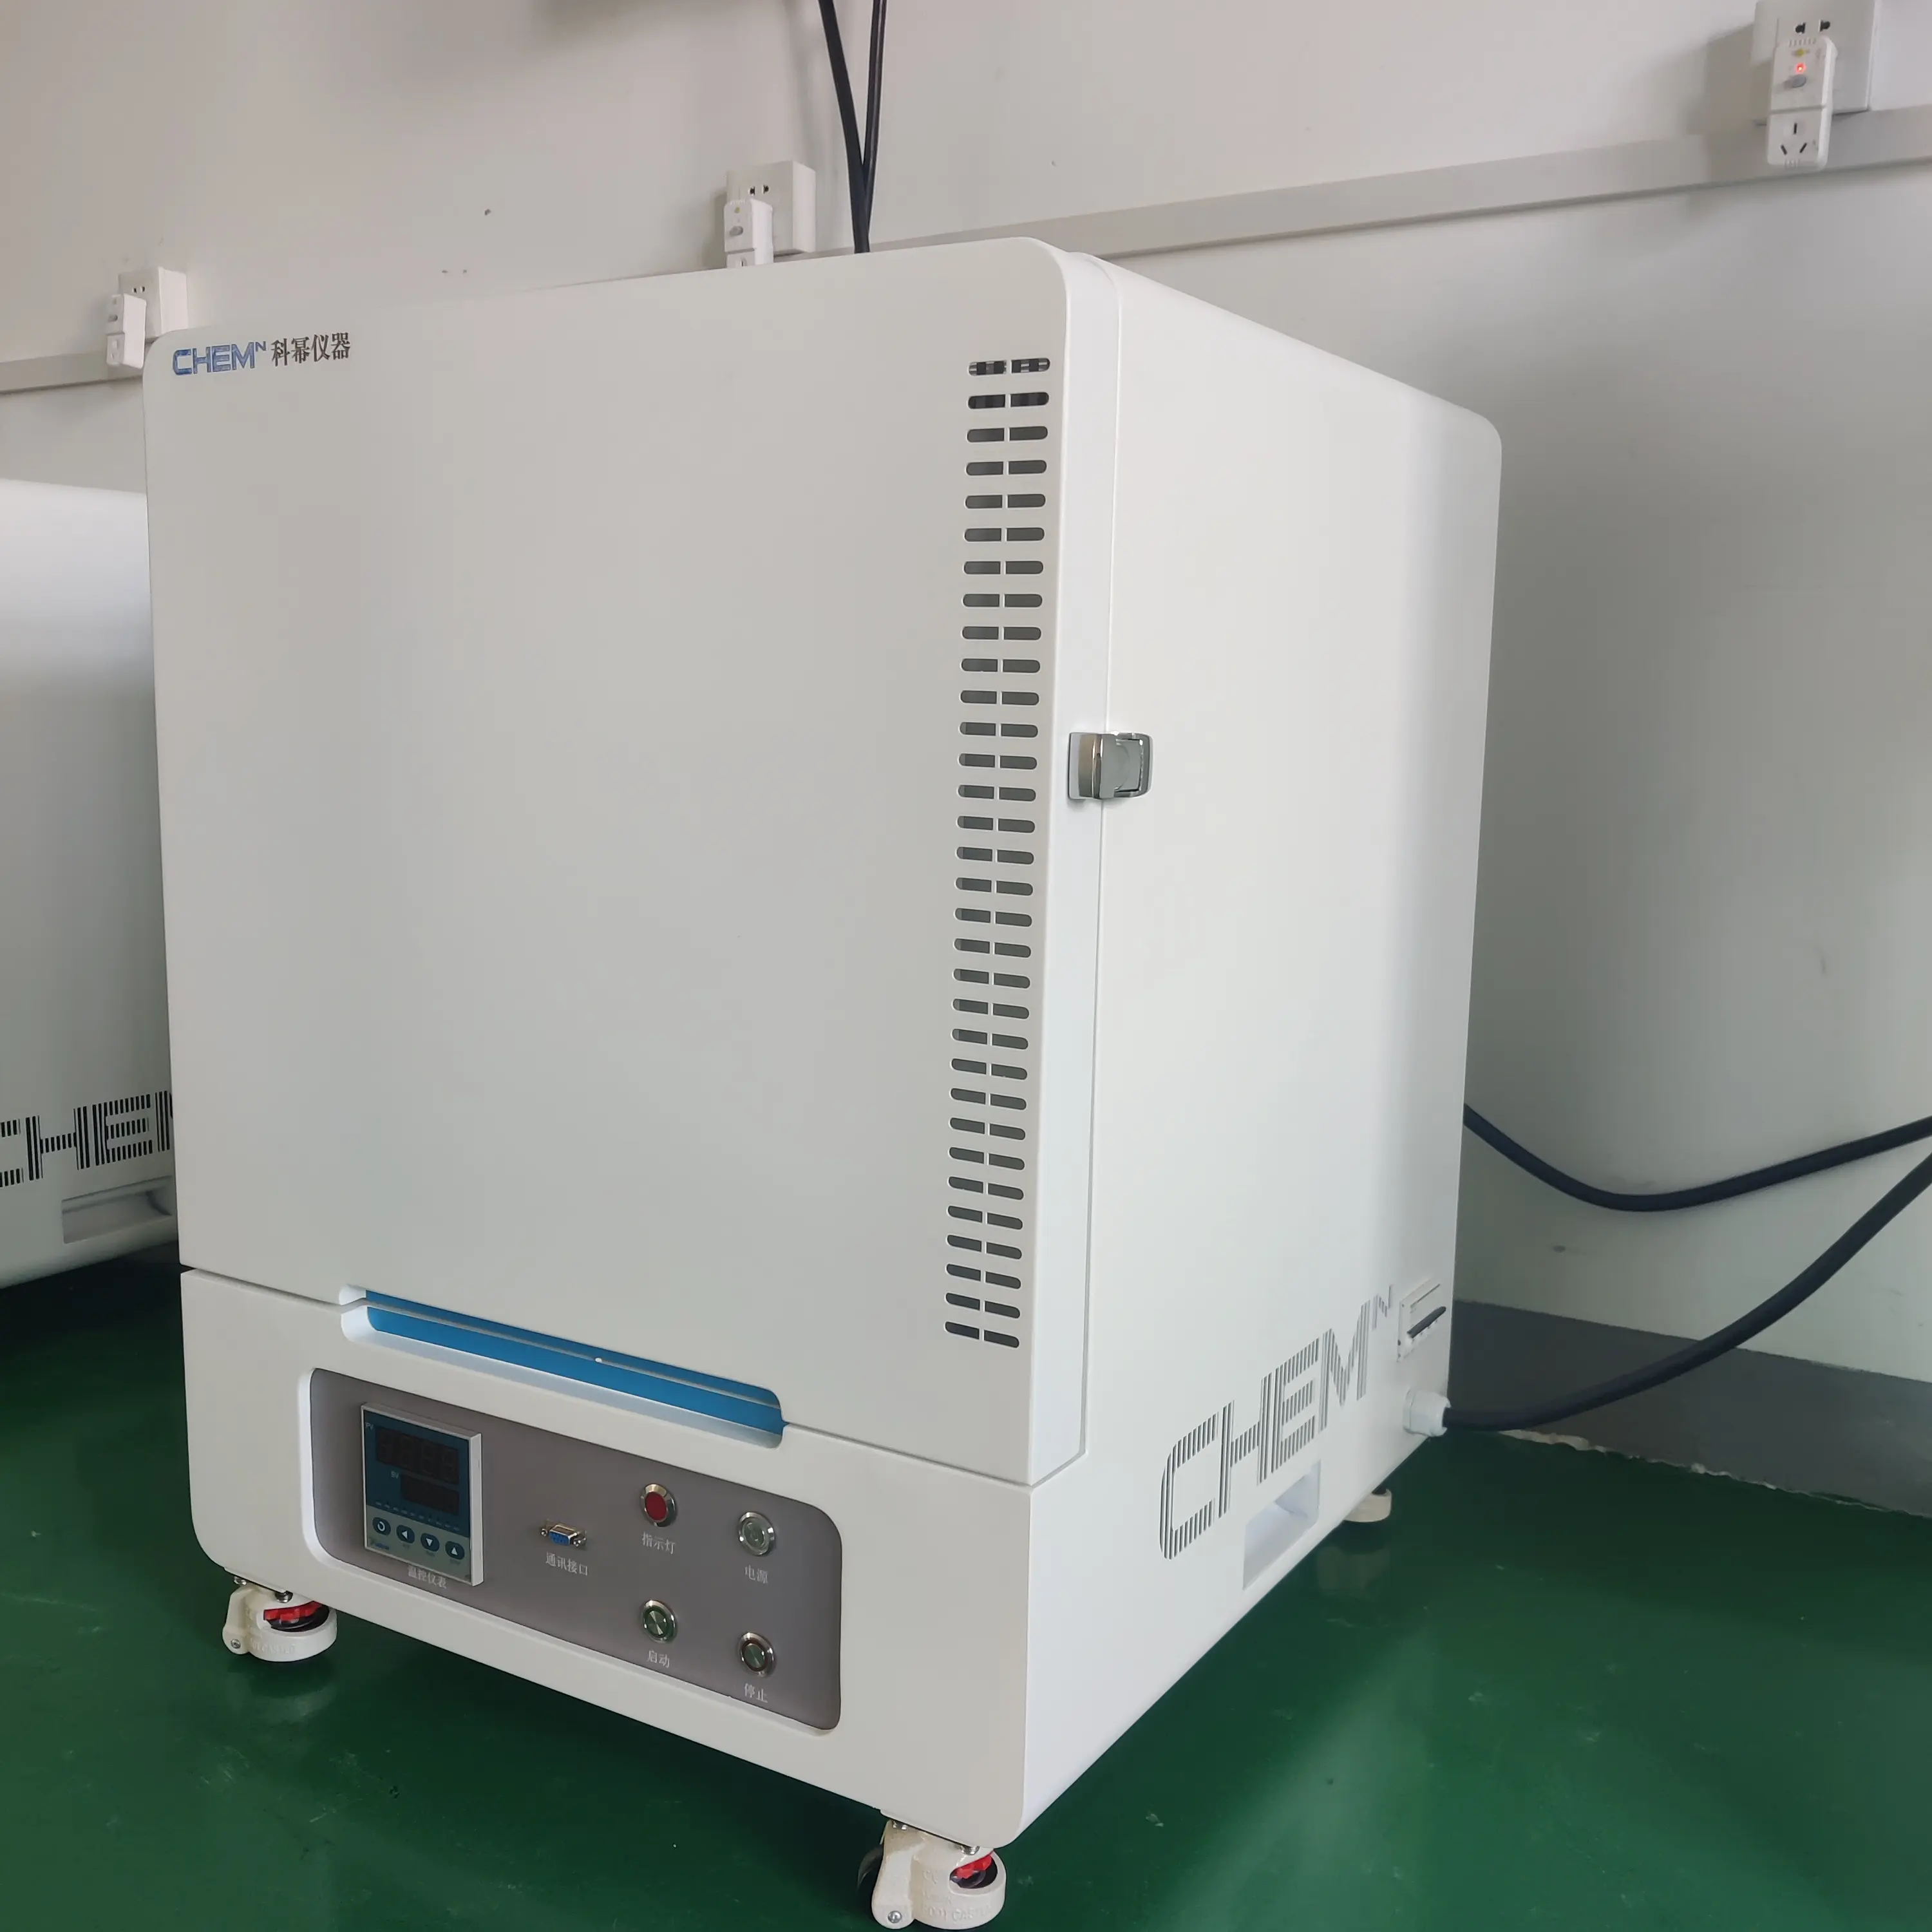 Basso prezzo BFC 18L apparecchiature di riscaldamento ad alta temperatura laboratorio elettrico camera a muffola forni